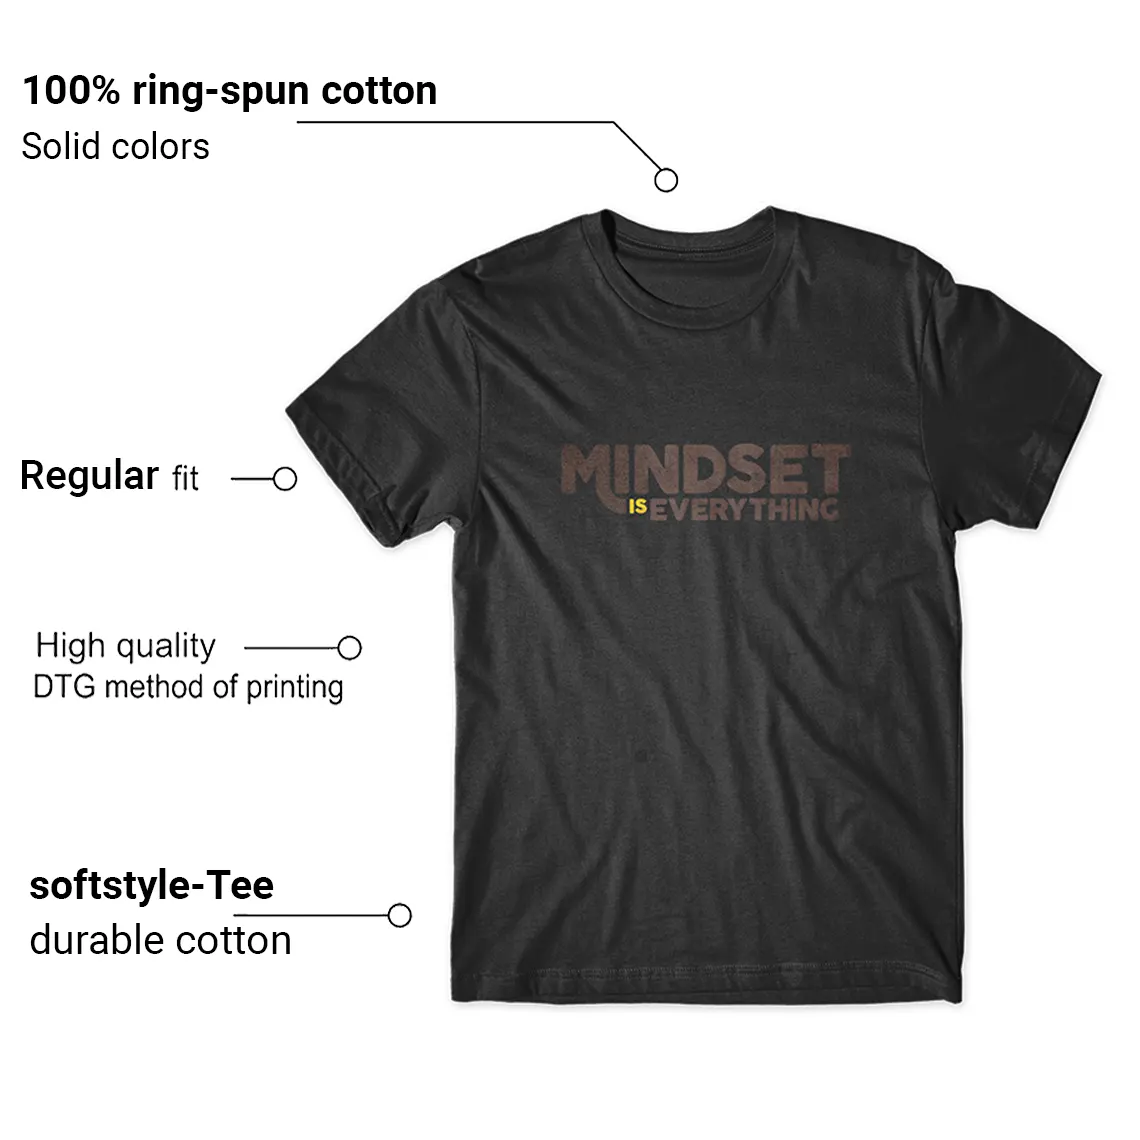 Shirt Matching Jordan 1 Palomino Mindset Graphic Features